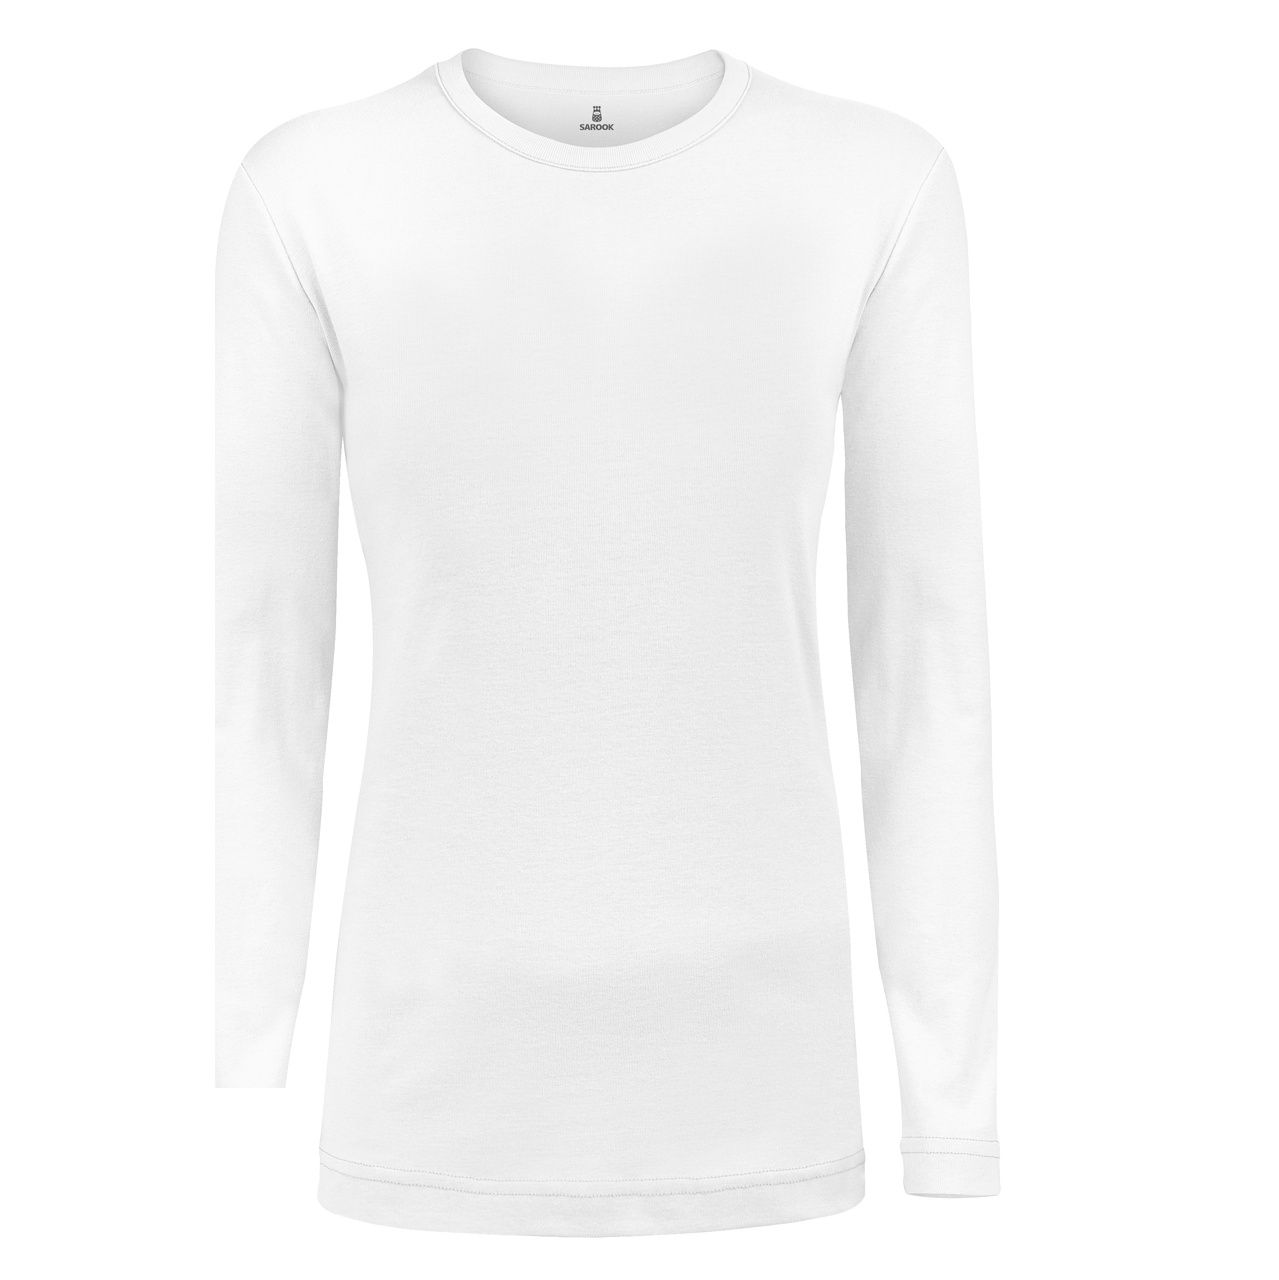 تی شرت آستین بلند زنانه ساروک مدل SZYUFR03 رنگ سفید -  - 1